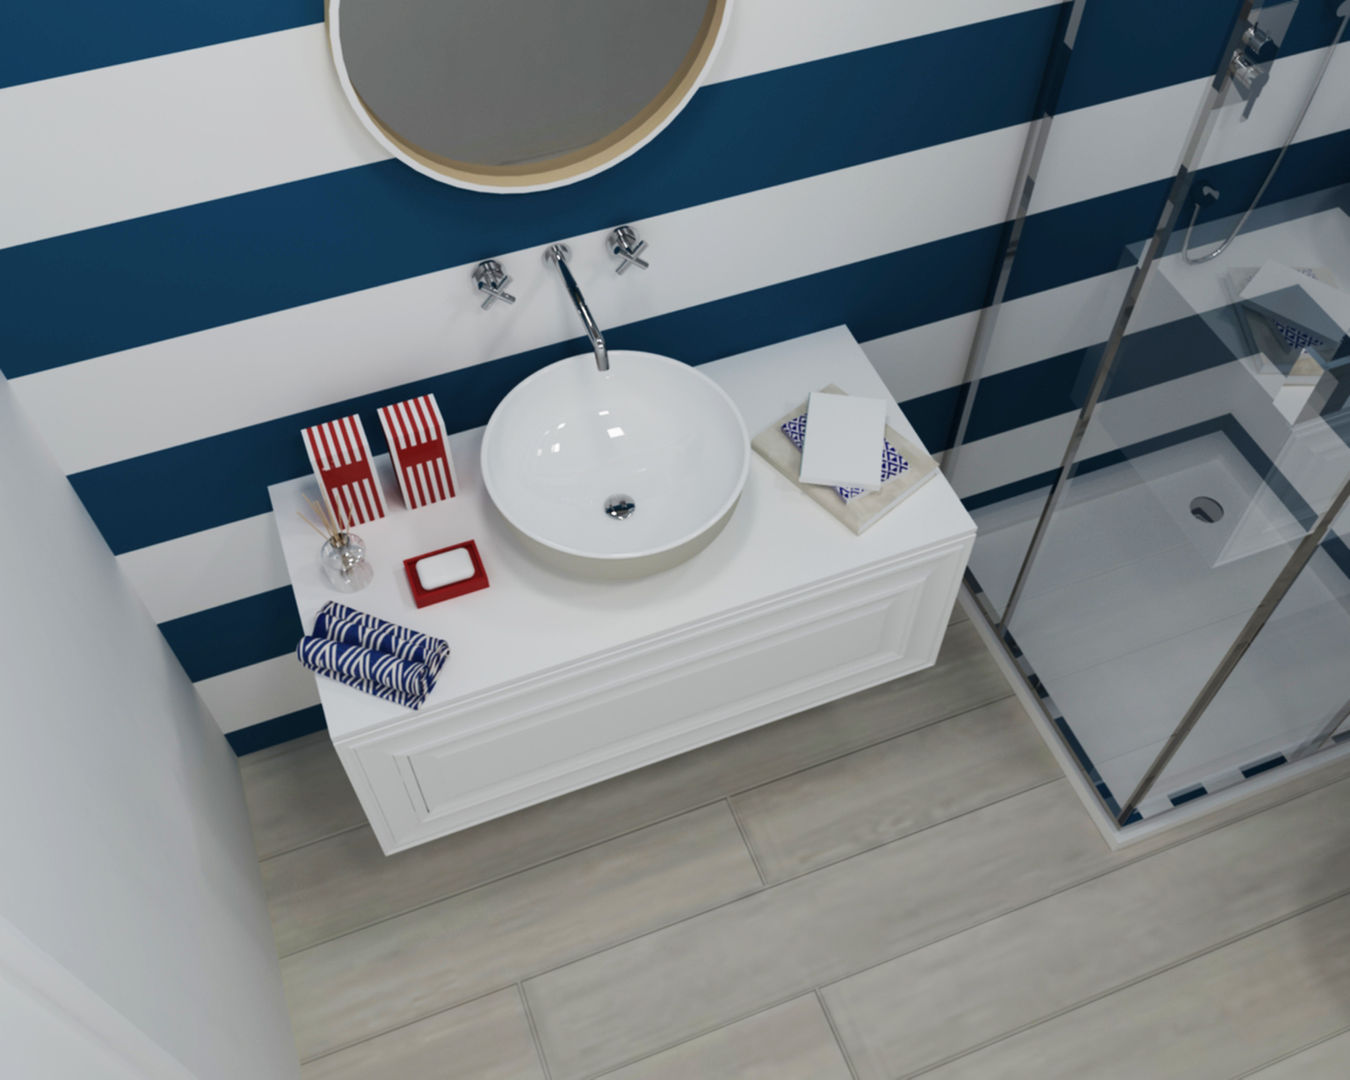 Ambientes 3D de casas de banho Smile Bath, Smile Bath S.A. Smile Bath S.A. Baños modernos